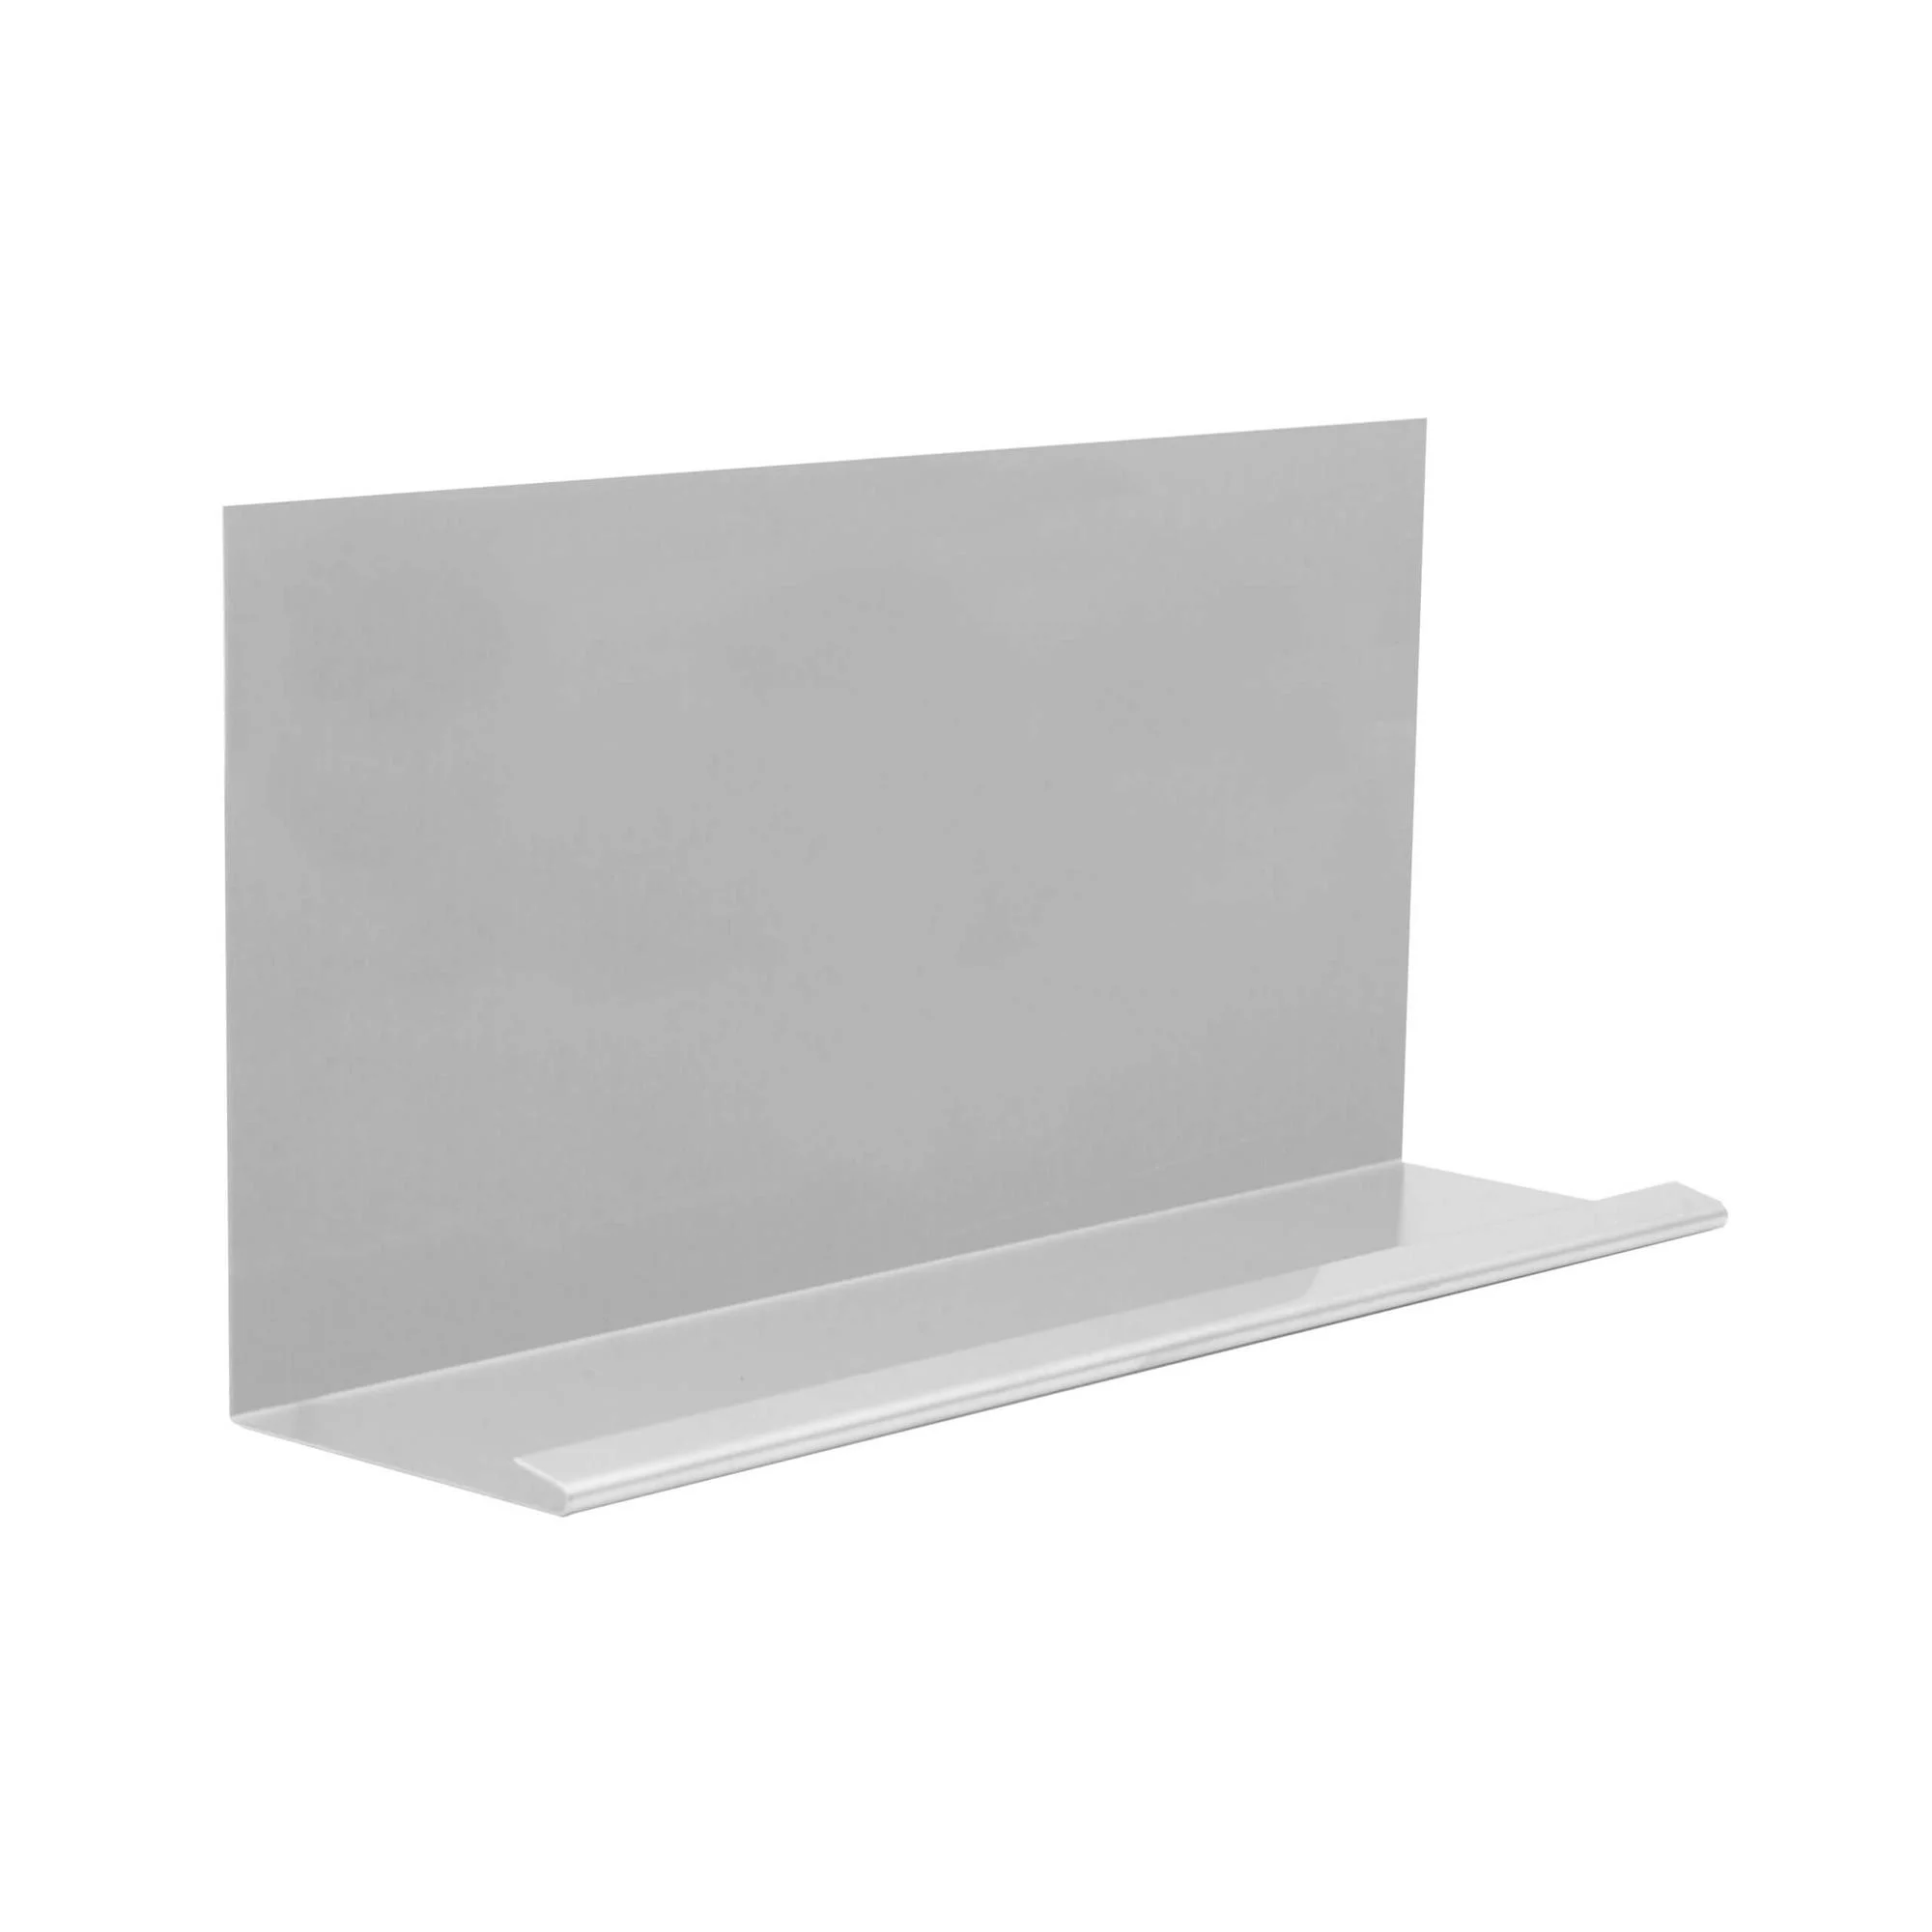 schuin-plaatstalen-dak-met-waternaad-aluminium-zilver-200cm.-1-stuk